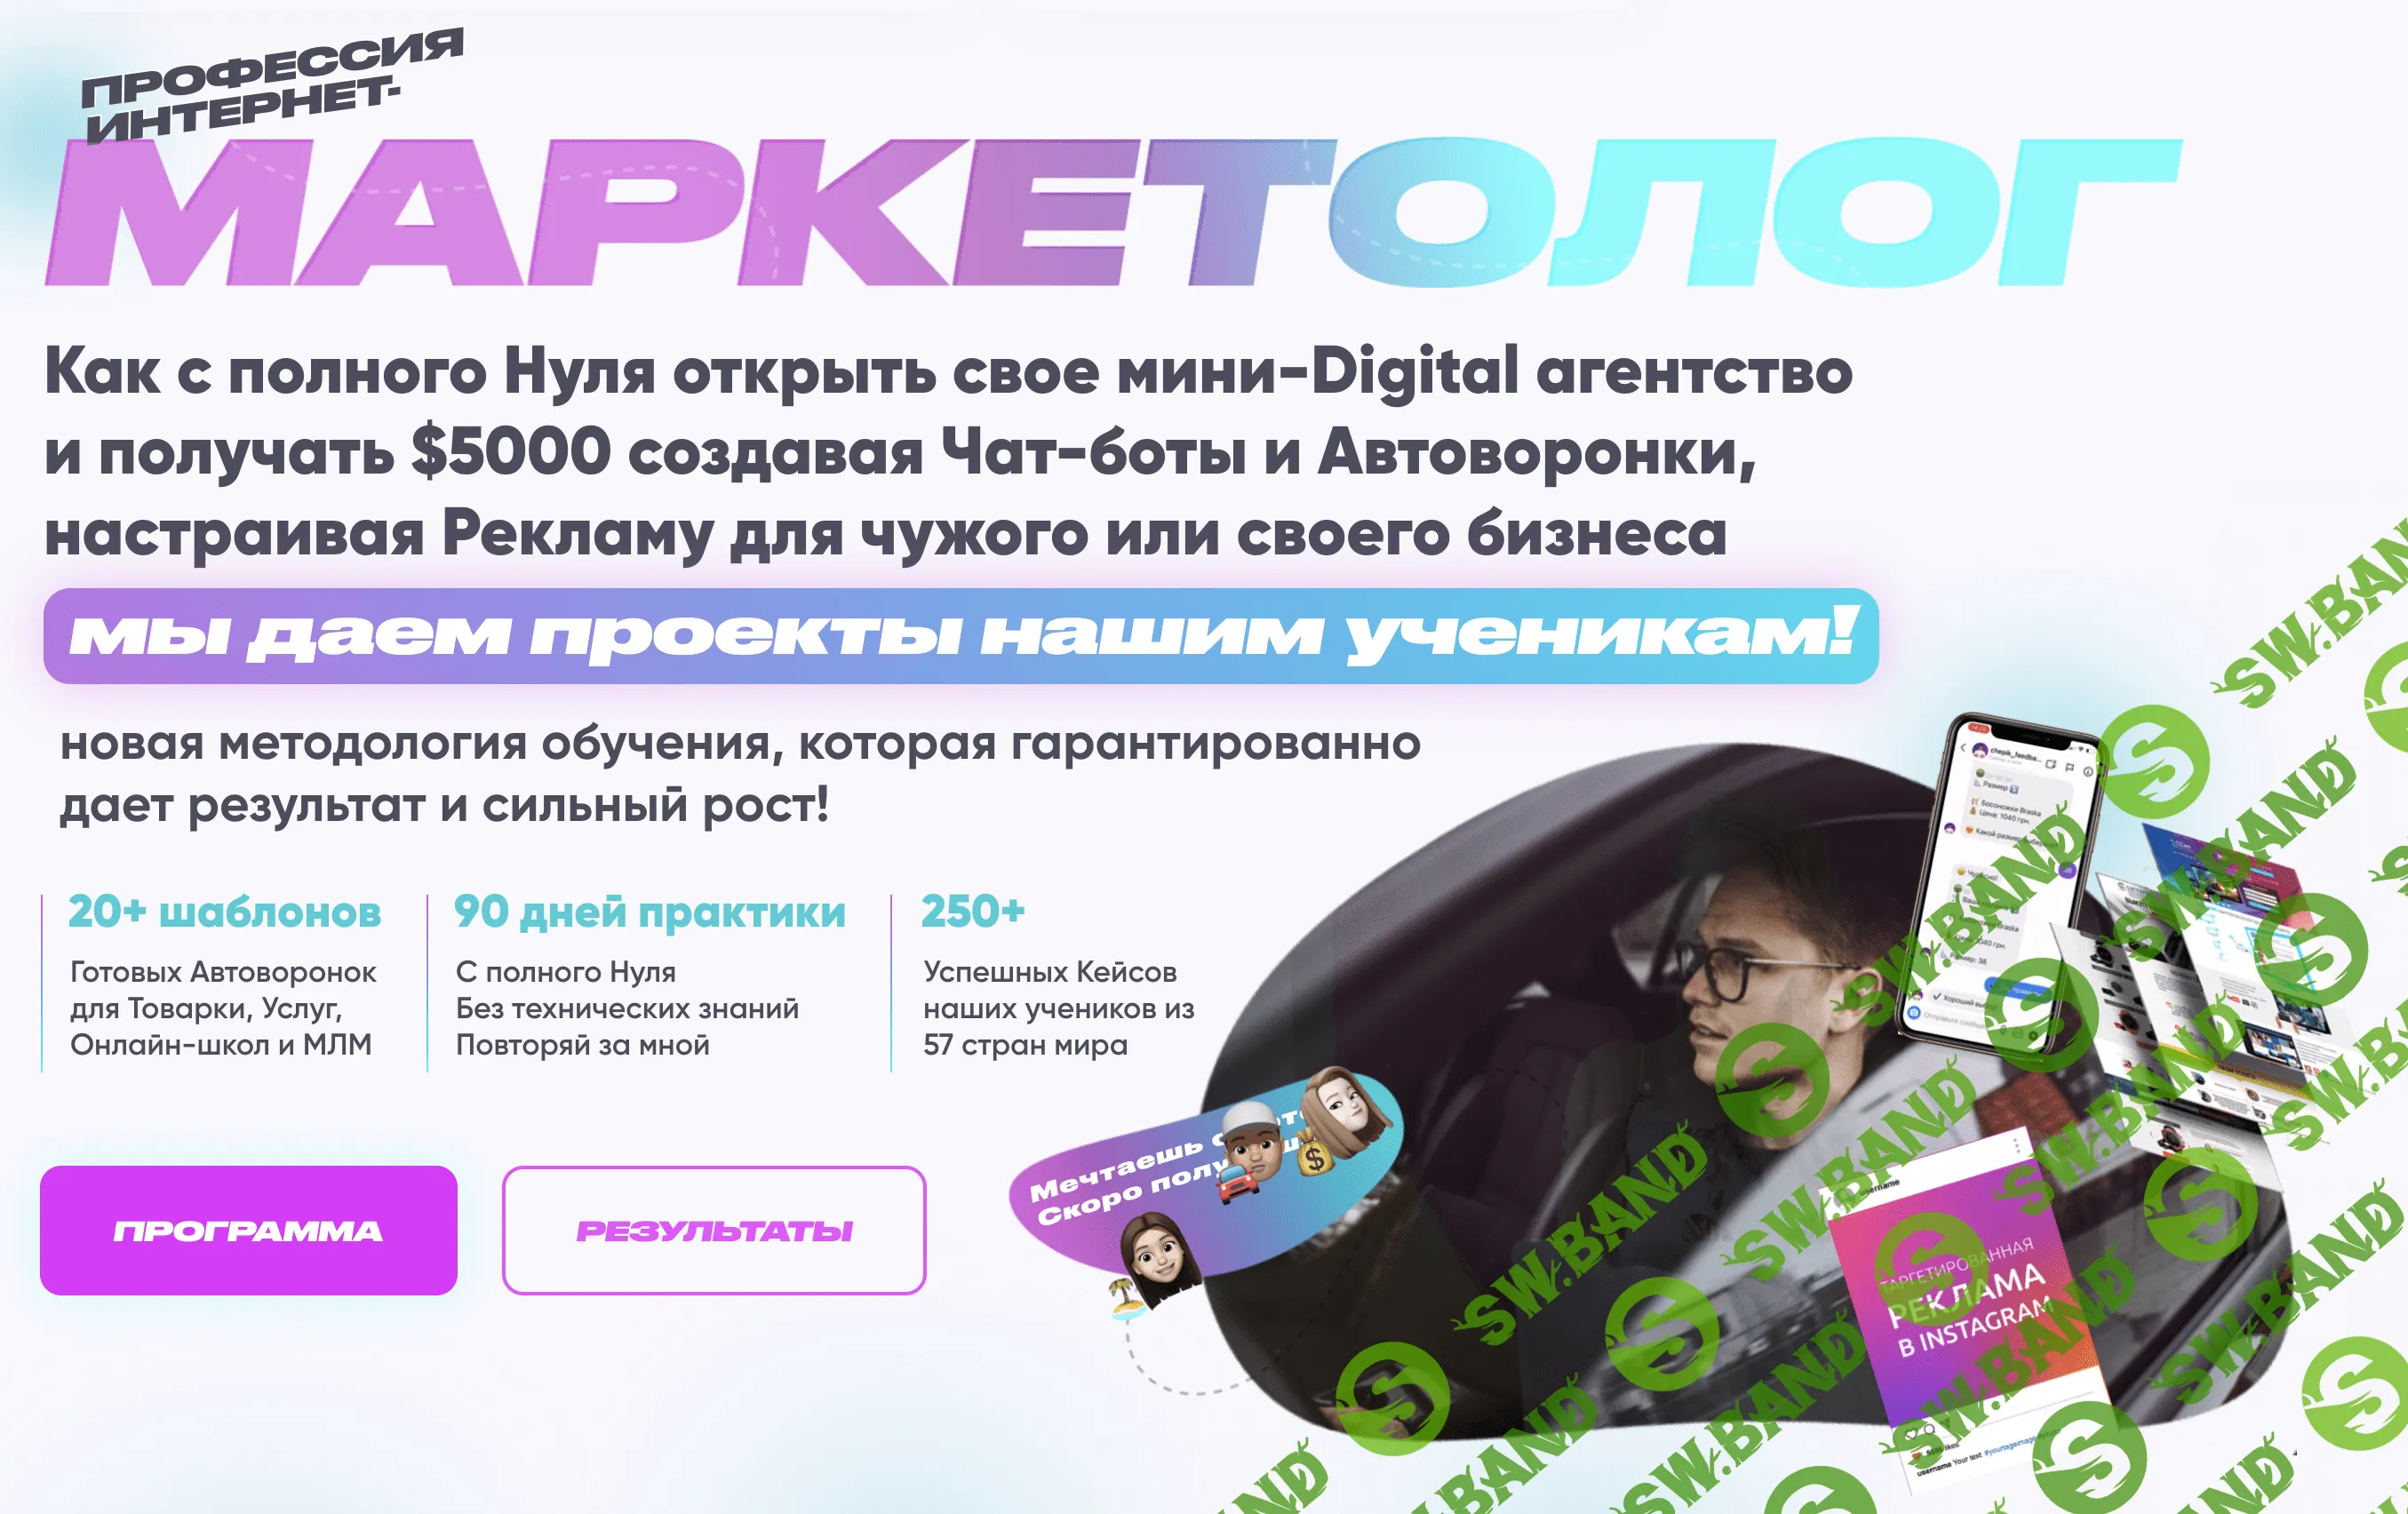 [Андрей Чепик] Как с нуля открыть свое мини-Digital агентство и автоворонки в своем бизнесе (2021)